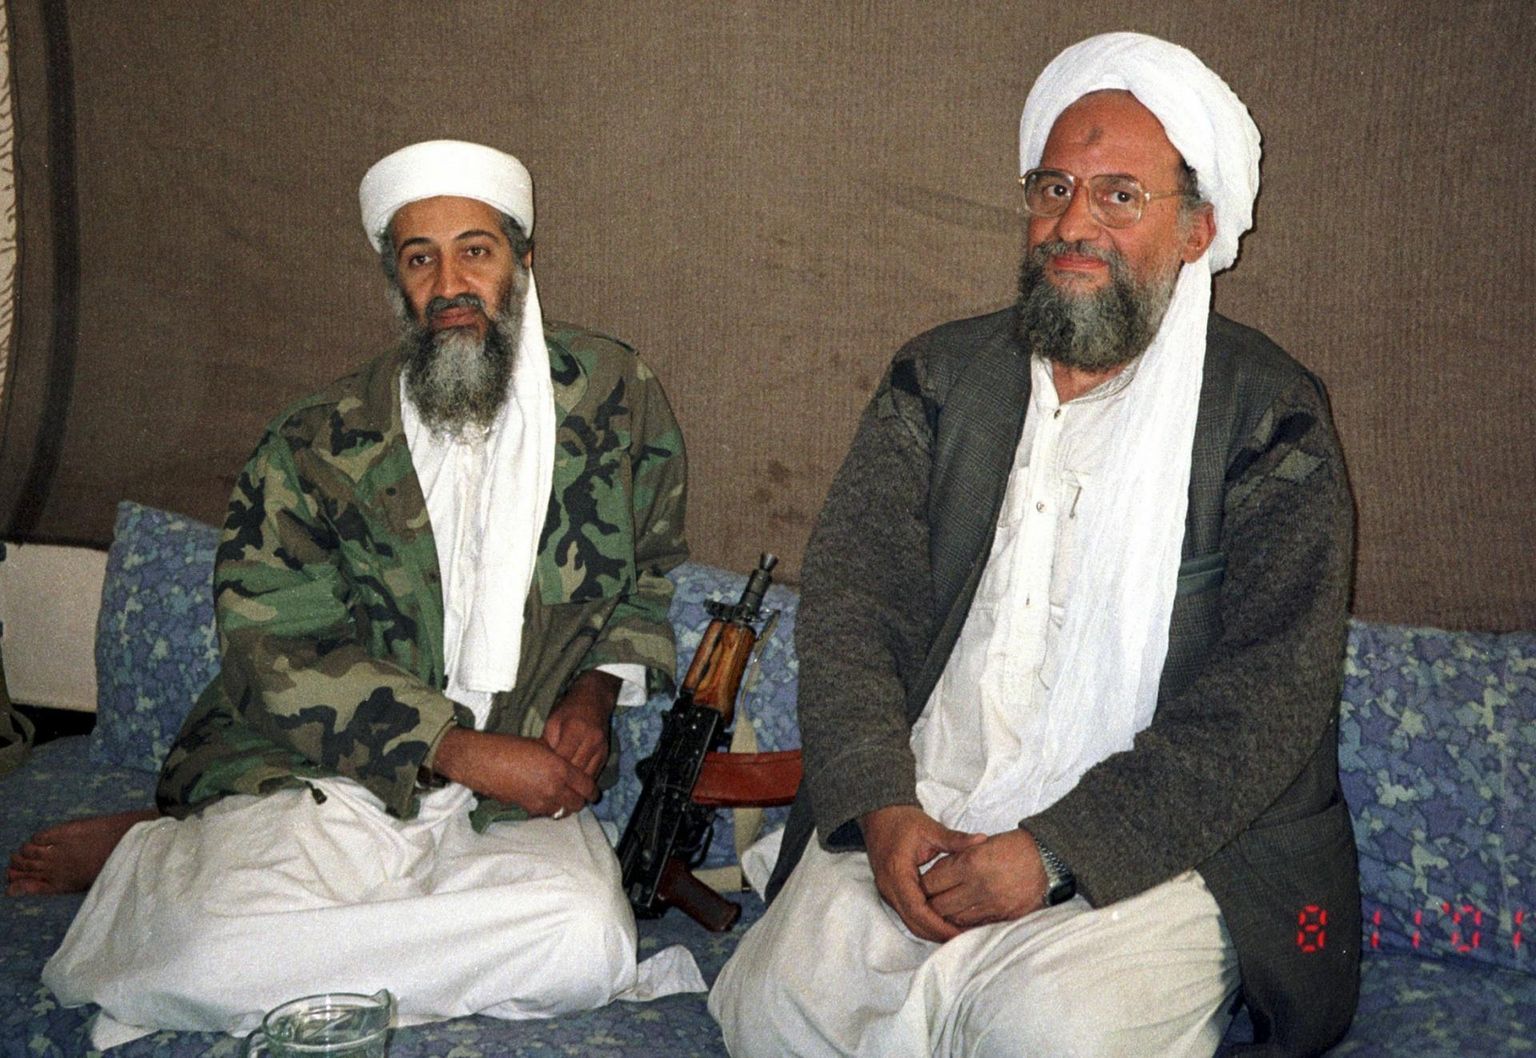 Terrorirühmituse Al-Qaeda toonane liider Osama bin Laden (vasakul) 2001. aasta novembris koos oma nõuniku ja hiljem organisatsiooni juhiks kerkinud Ayman Al-Zawahiriga intervjuu ajal Pakistani ajalehele Dawn.